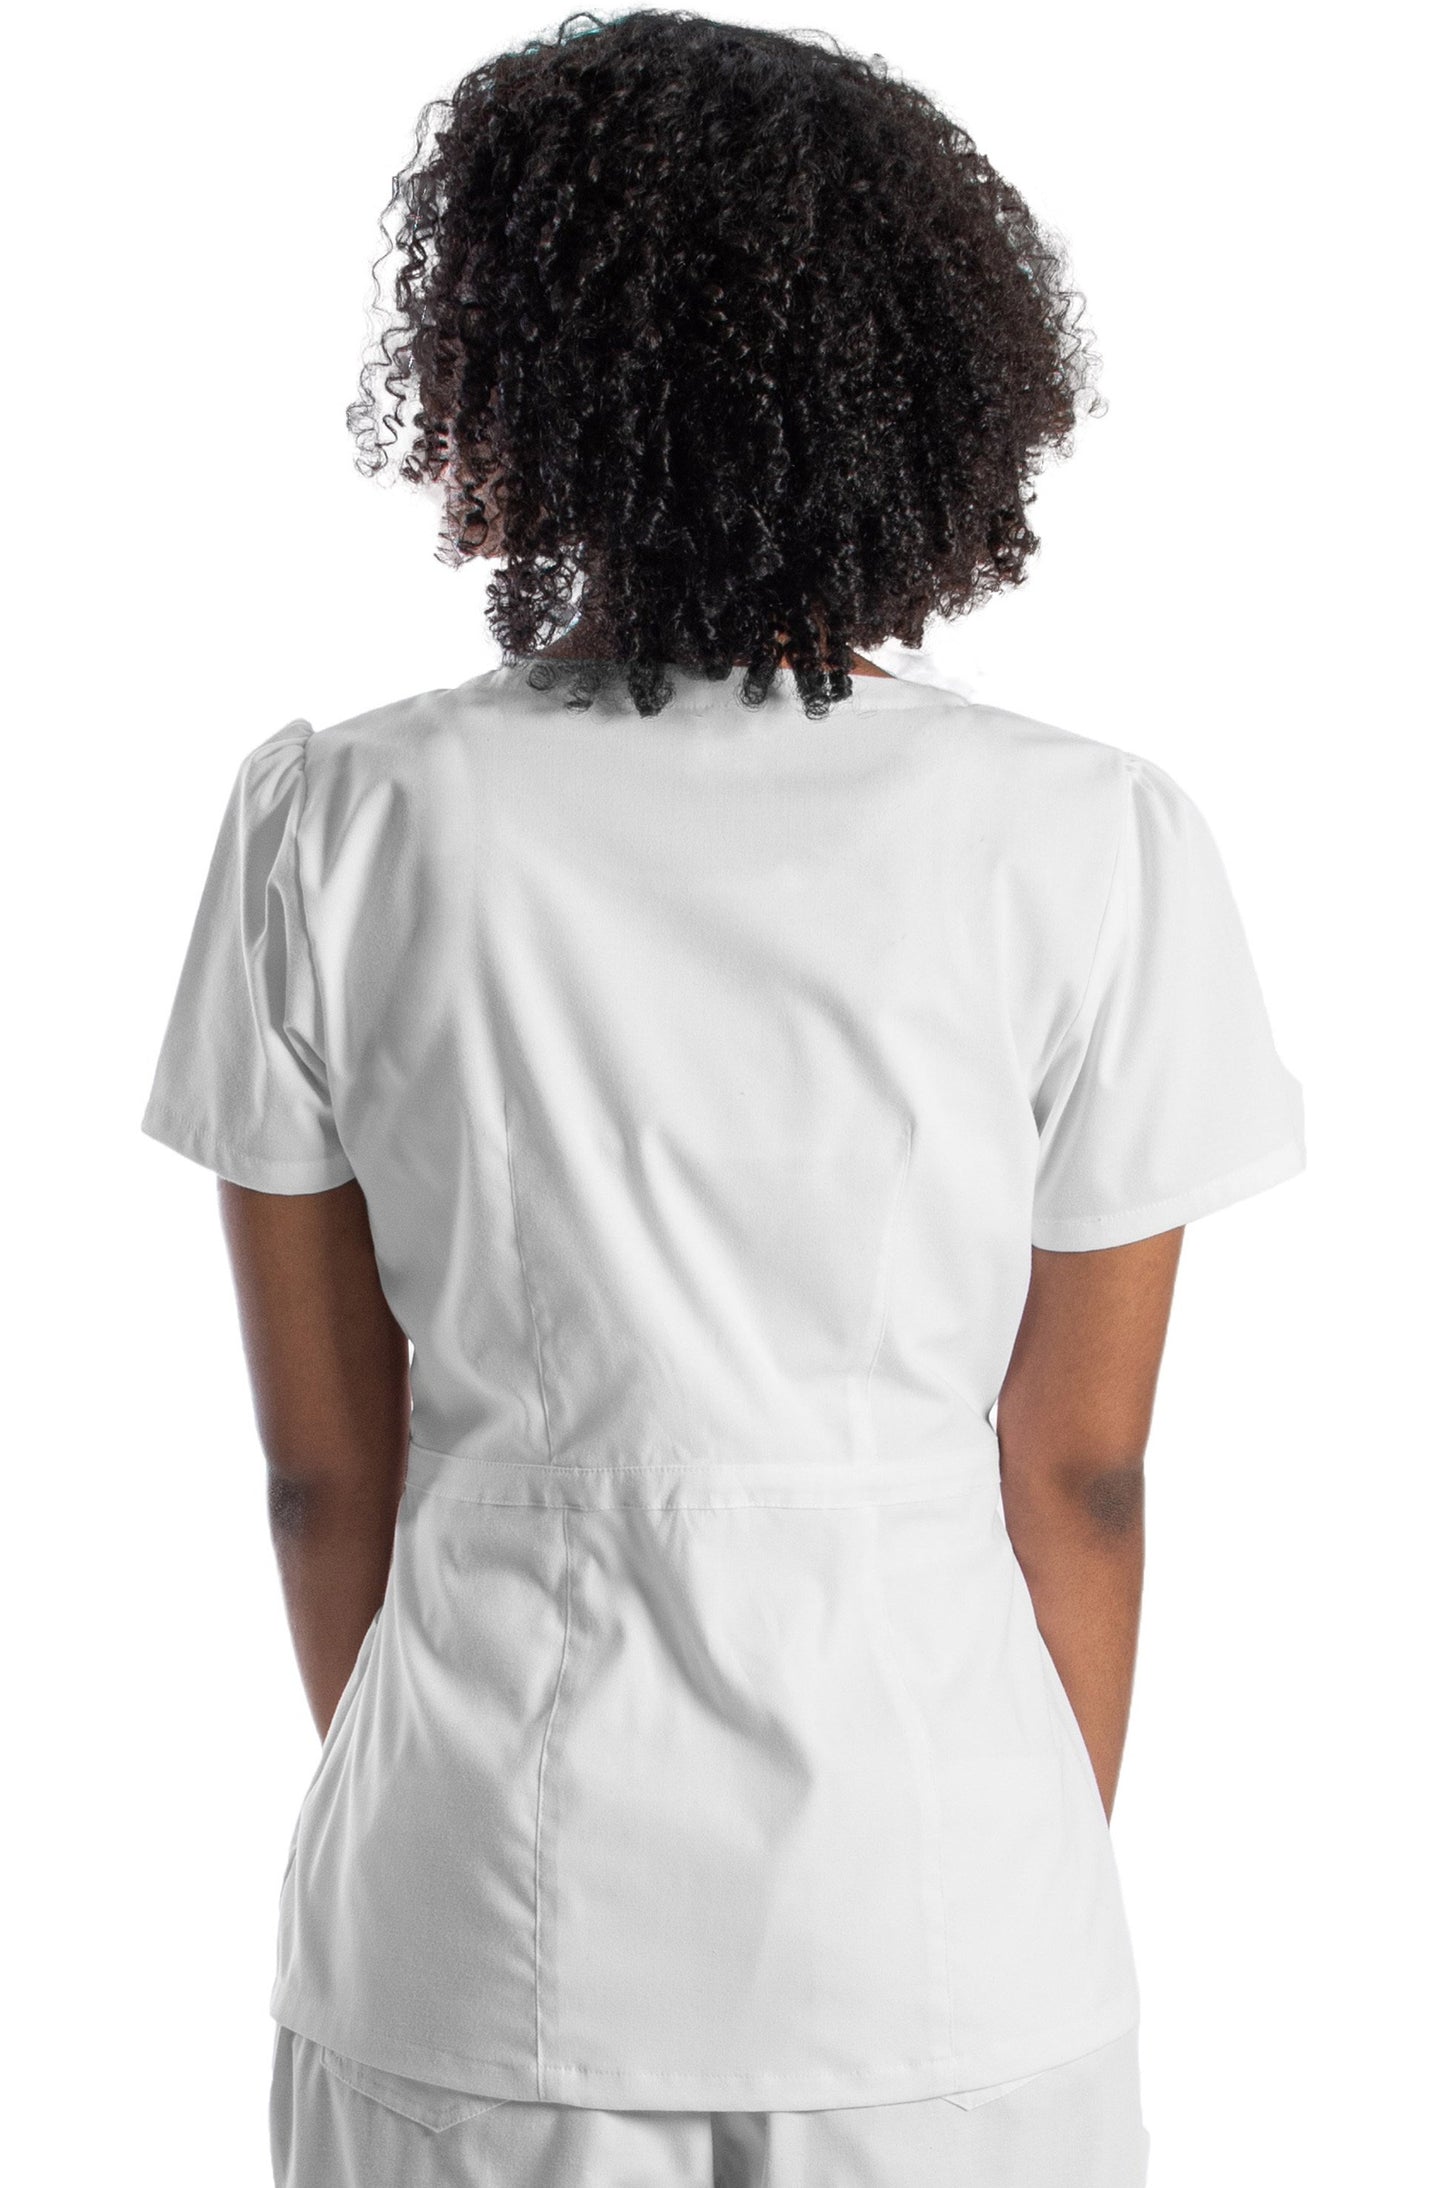 Mujer de espaldas usando filipina color blanco de uso médico o para spa. La filipina tiene pinzas en la cintura, fruncido en las mangas, cuello redondo, y cierre lateral.